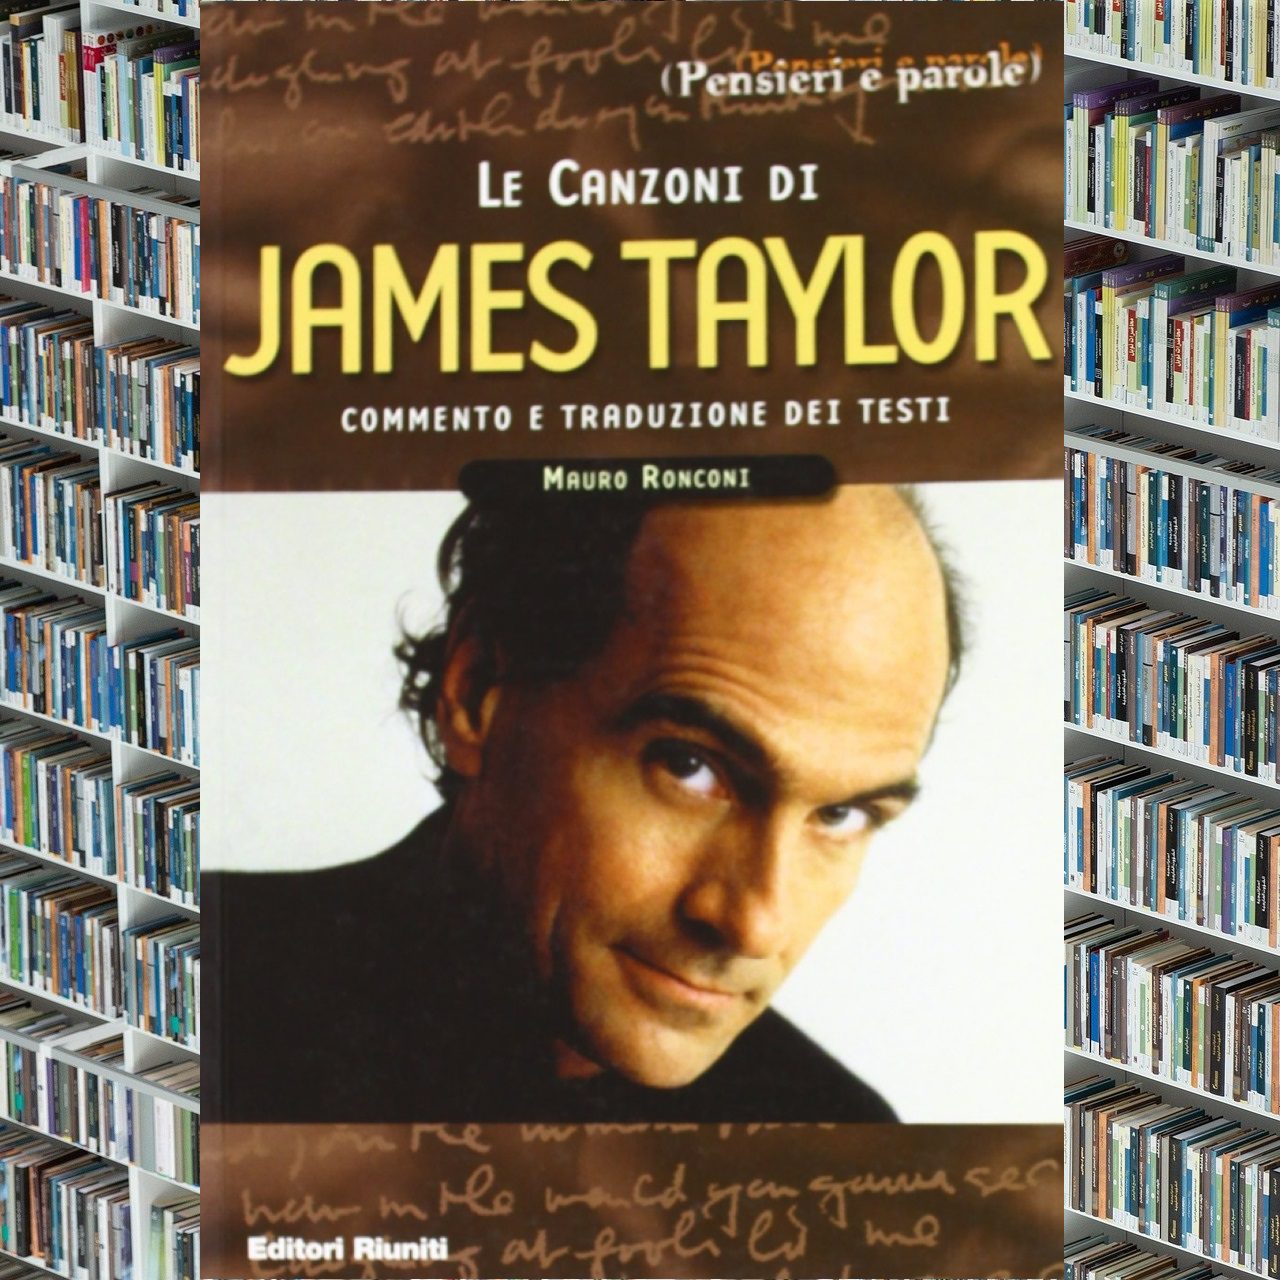 Mauro Ronconi – Le canzoni di James Taylor cover book